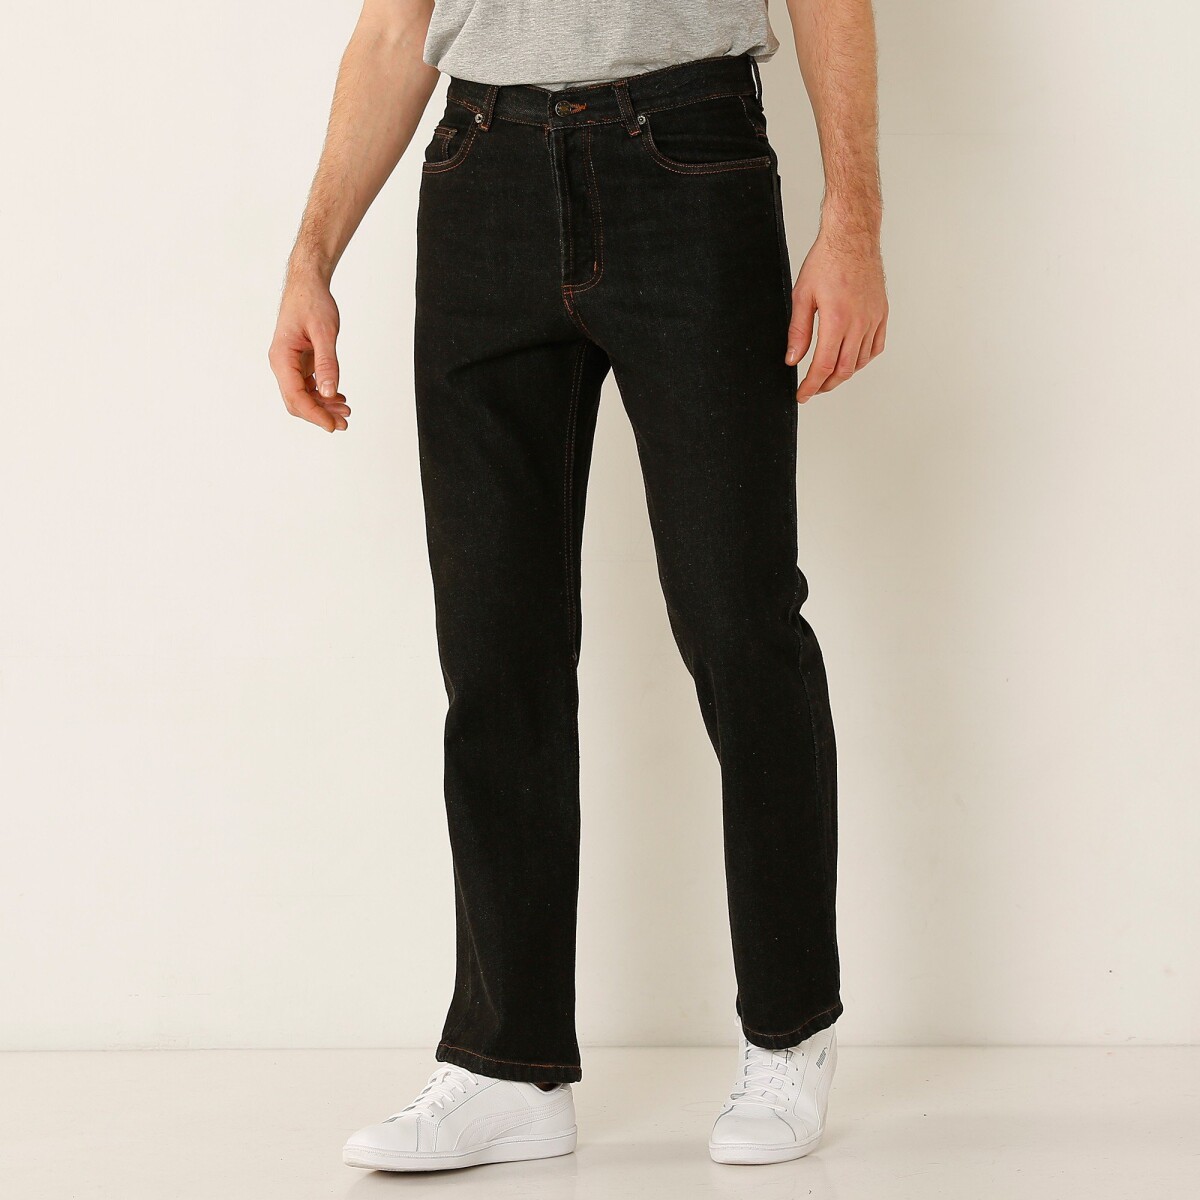 Rovné džínsy Whak\'s, vnútorná dĺžka nohavíc 72 cm